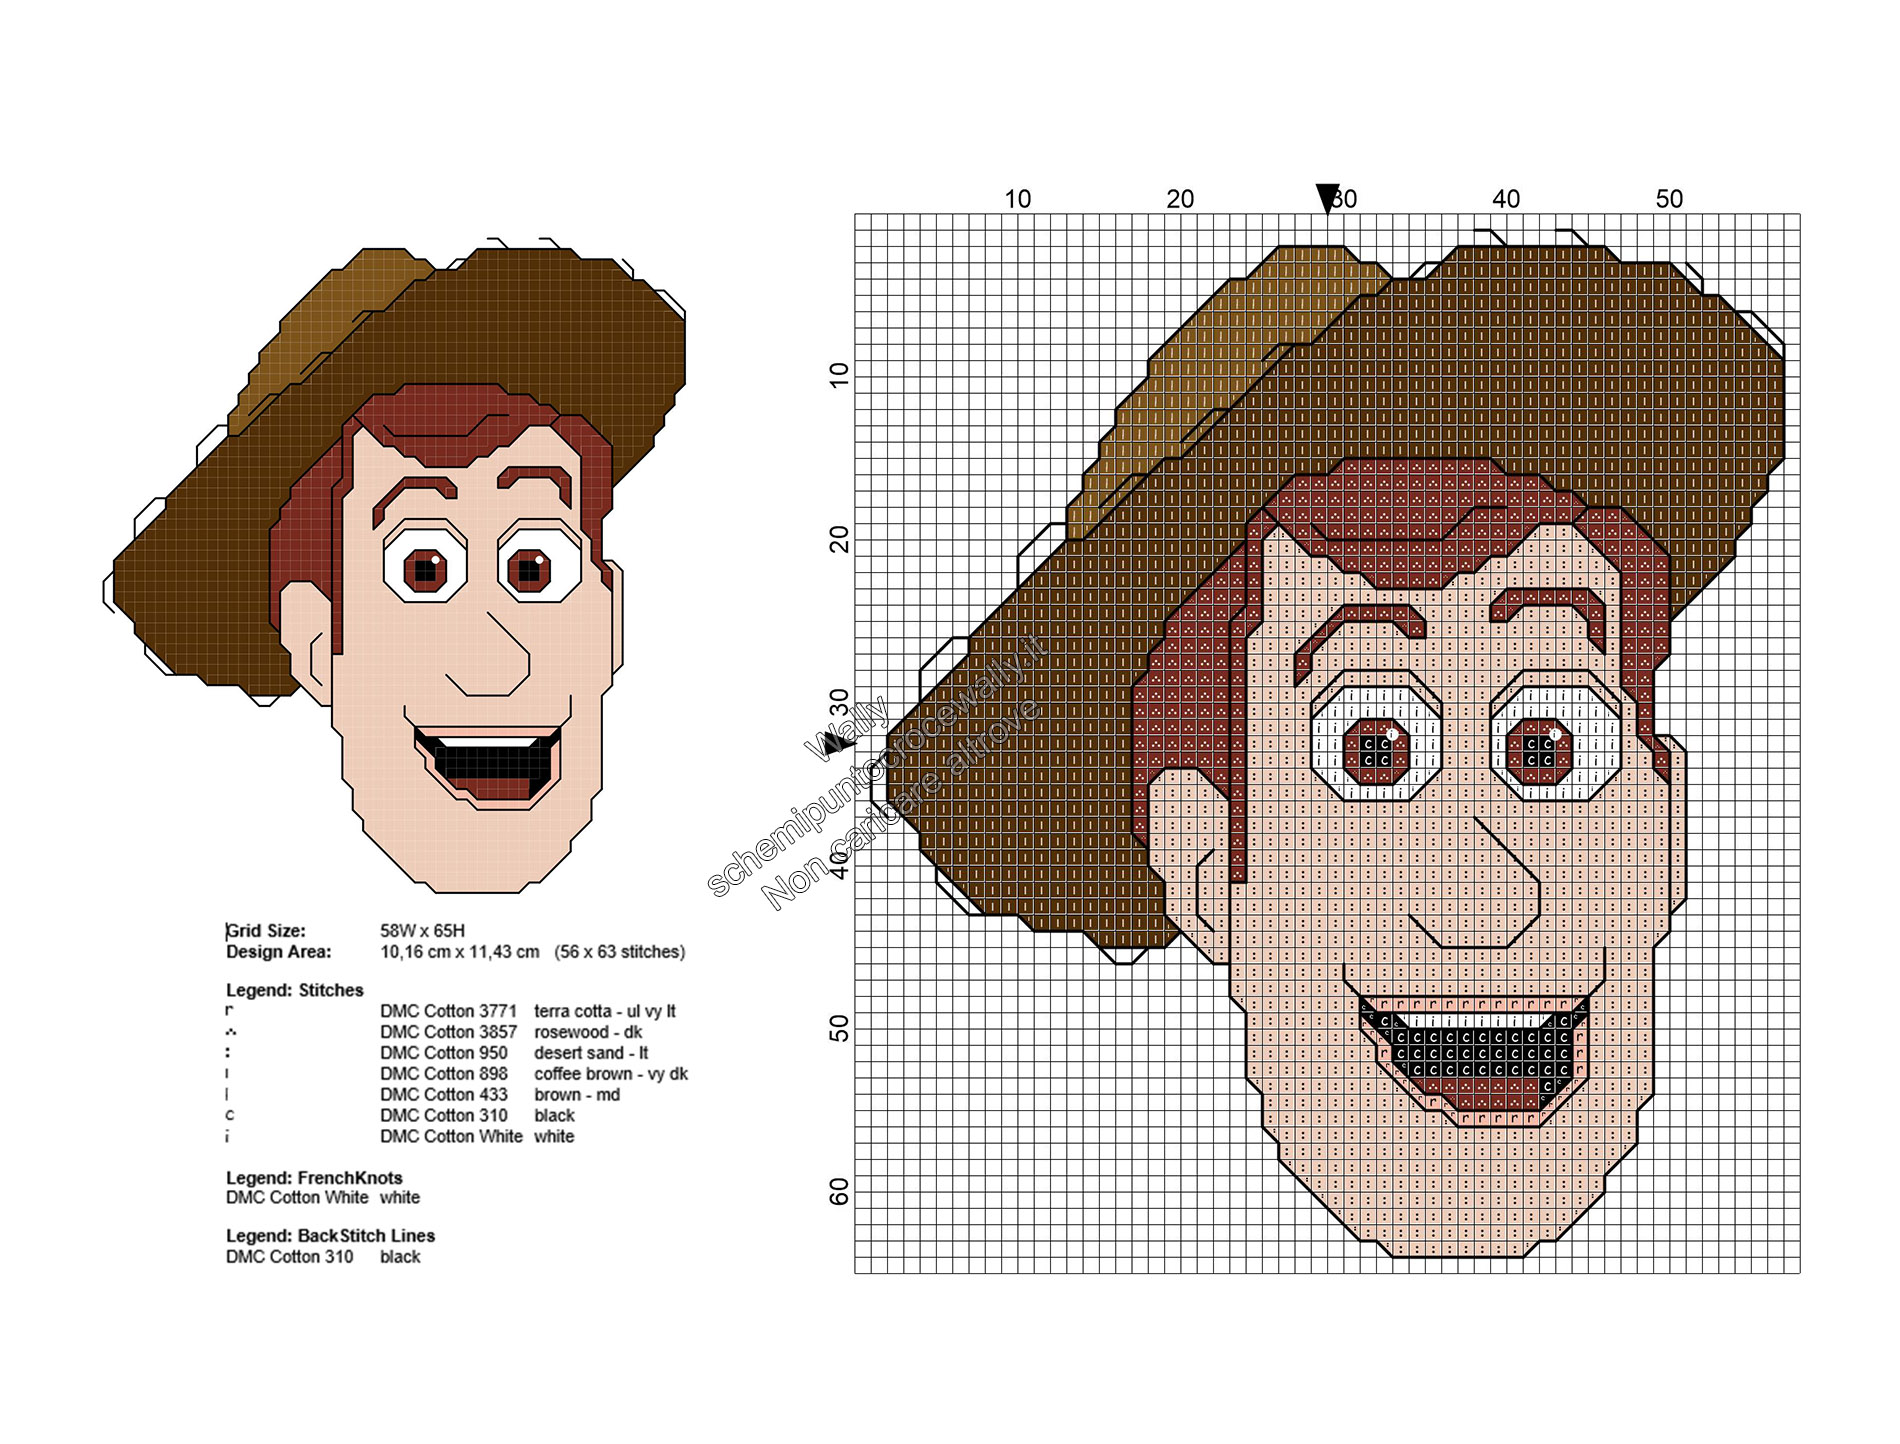 Woody personaggio Toy Story schema punto croce gratis 56x63